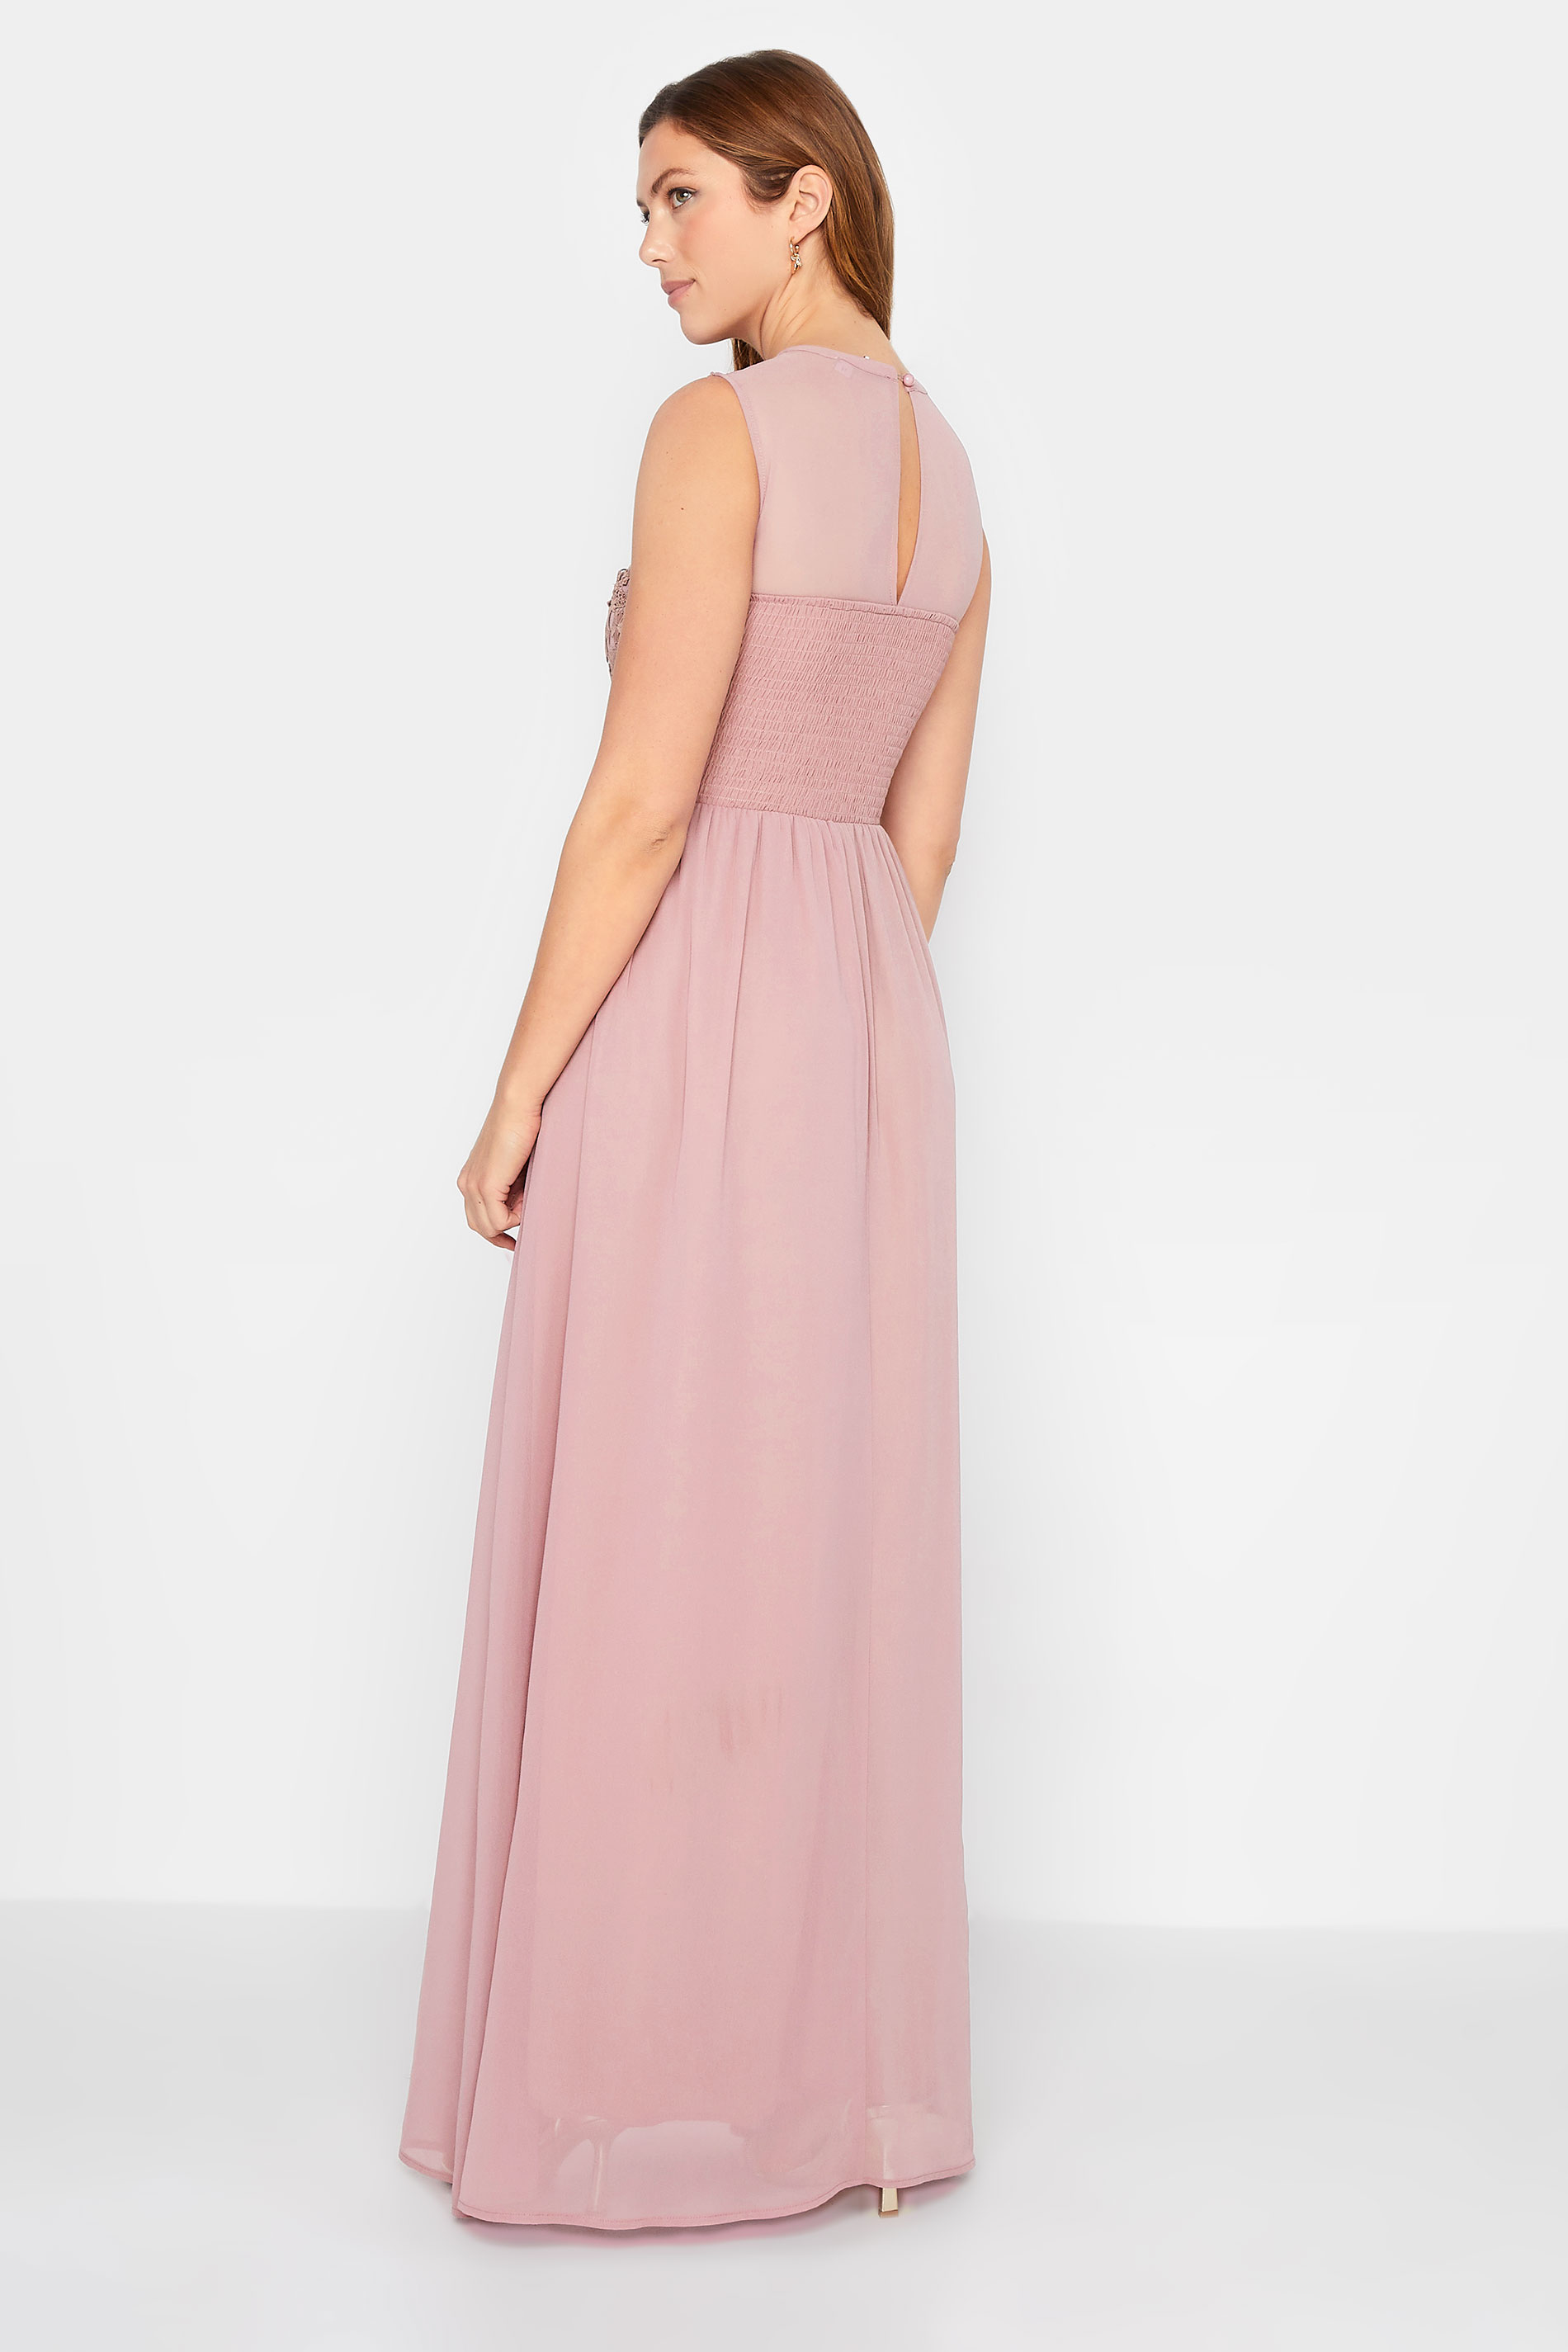 LTS Tall Women's Blush Pink Lace Chiffon Maxi Dress | Long Tall Sally  3